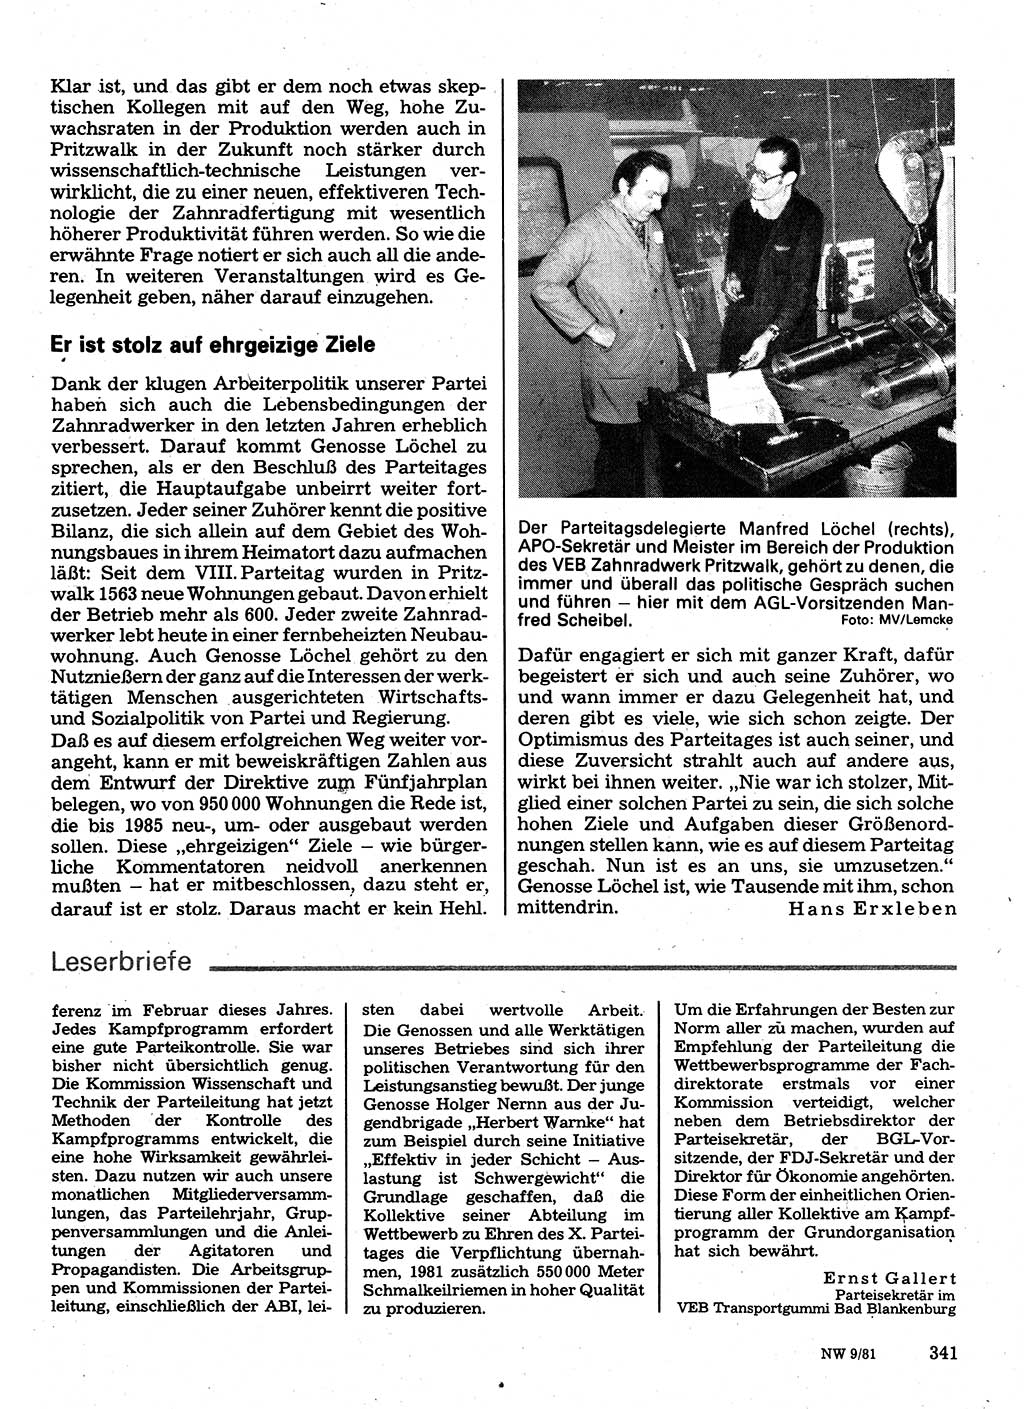 Neuer Weg (NW), Organ des Zentralkomitees (ZK) der SED (Sozialistische Einheitspartei Deutschlands) für Fragen des Parteilebens, 36. Jahrgang [Deutsche Demokratische Republik (DDR)] 1981, Seite 341 (NW ZK SED DDR 1981, S. 341)